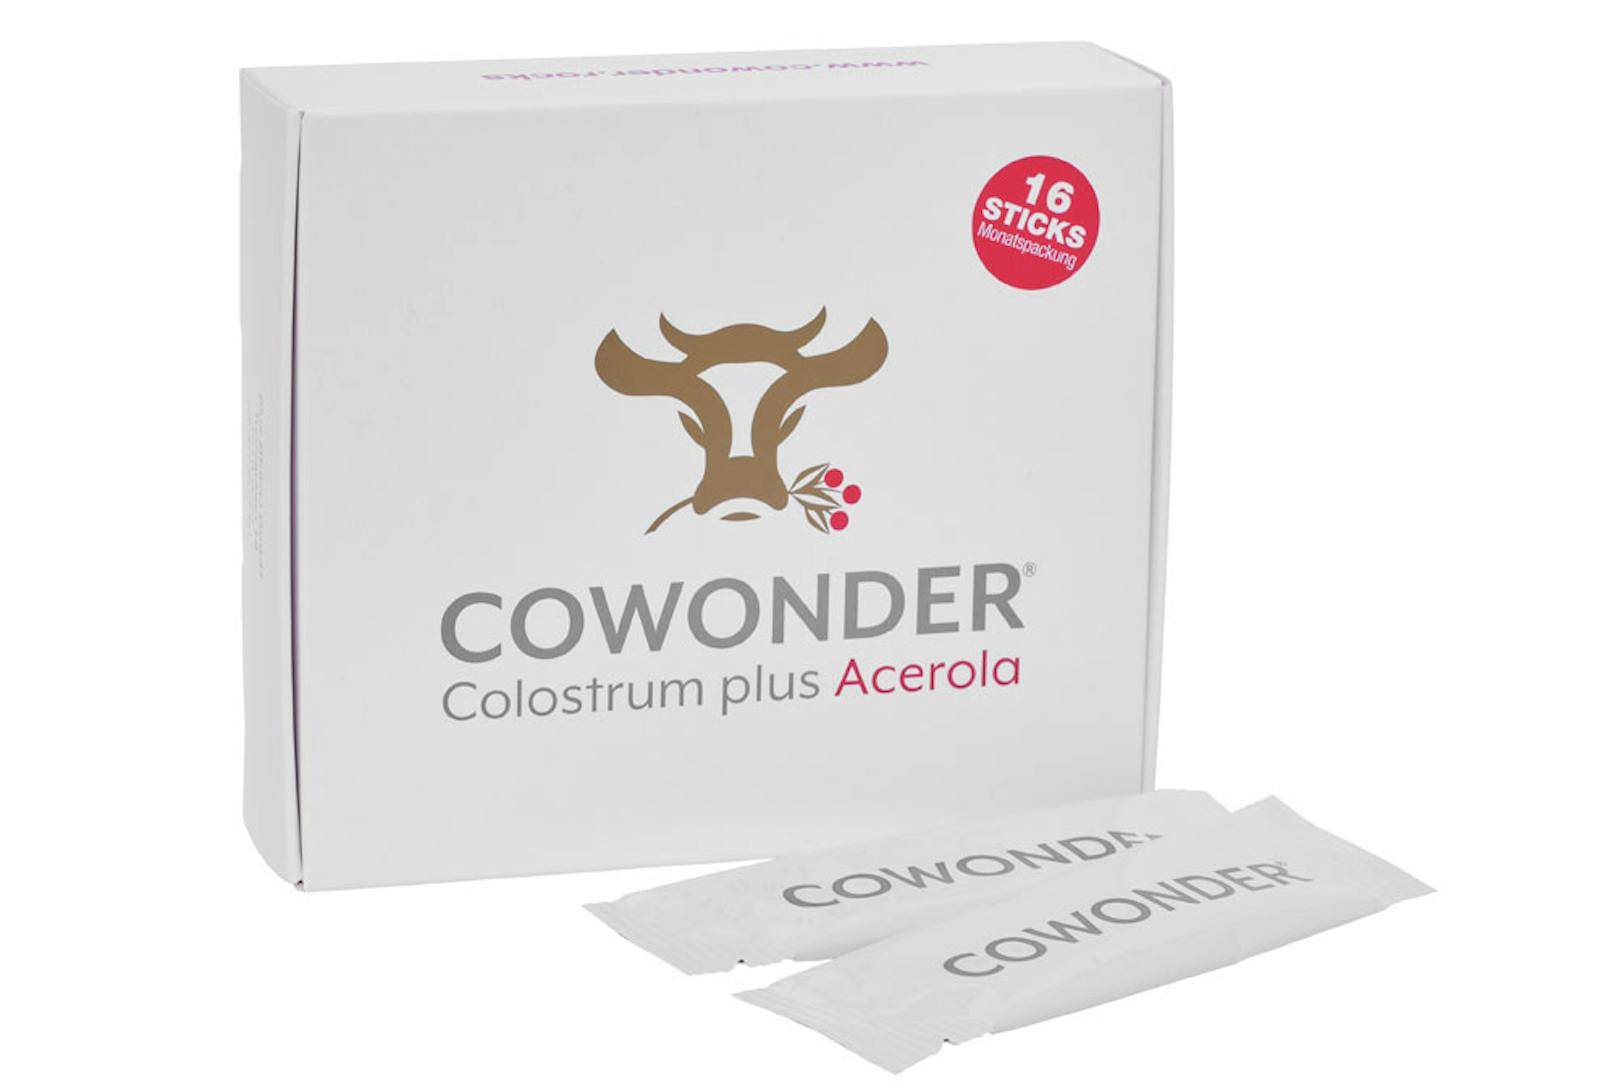 In einer Monatspackung COWONDER | Colostrum plus Acerola® befinden sich 16 Sticks à 3 g. Empfohlen wird, einen Stick jeden zweiten Tag einzunehmen.